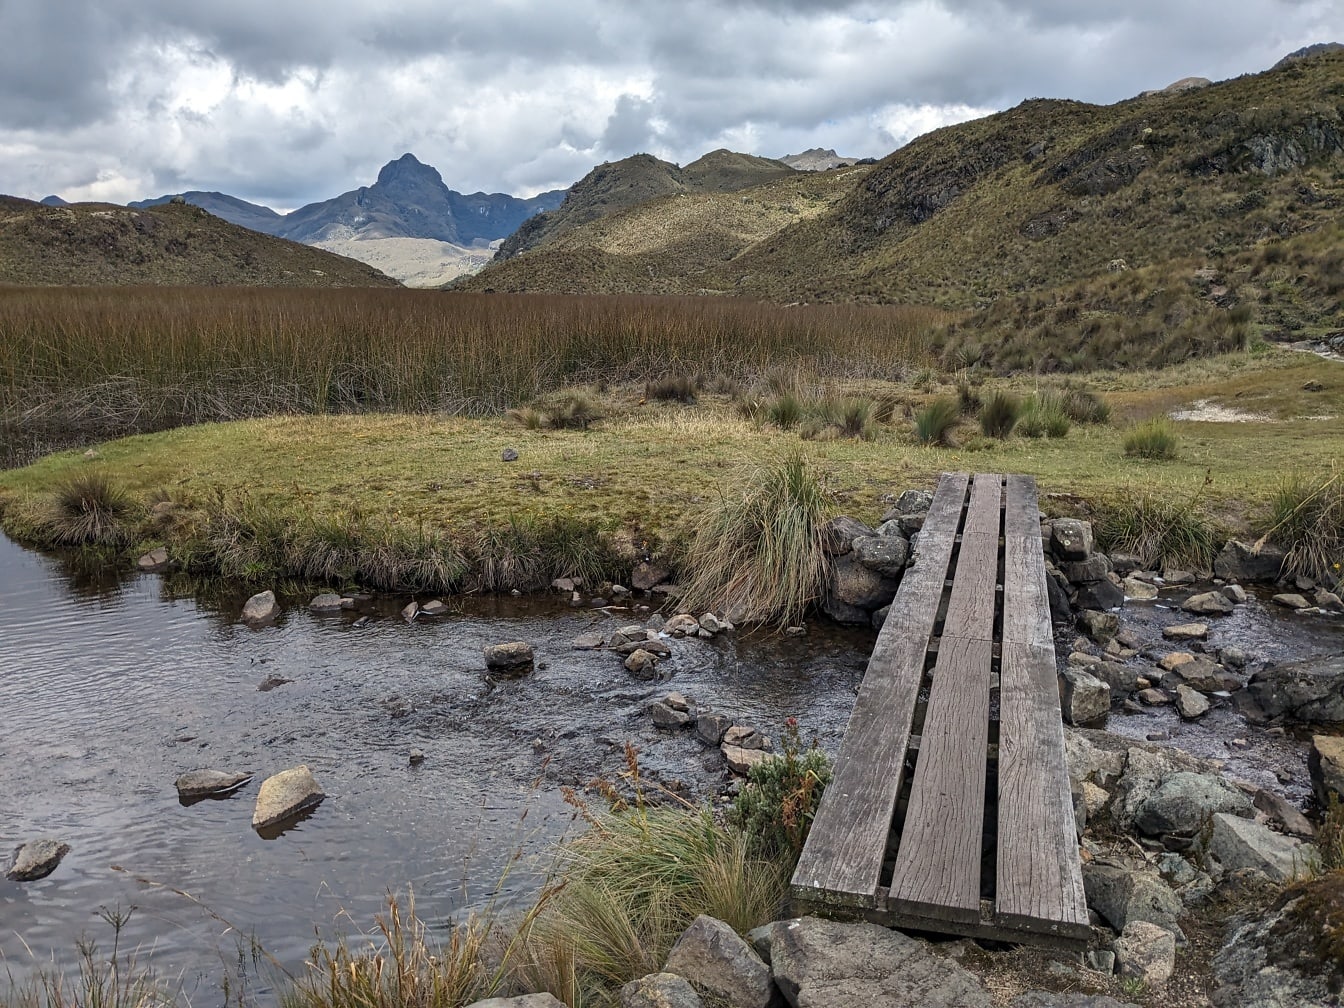 Három deszkából készült fahíd egy patak felett a Cajas természeti parkban, Cuenca kantonban, Ecuadorban